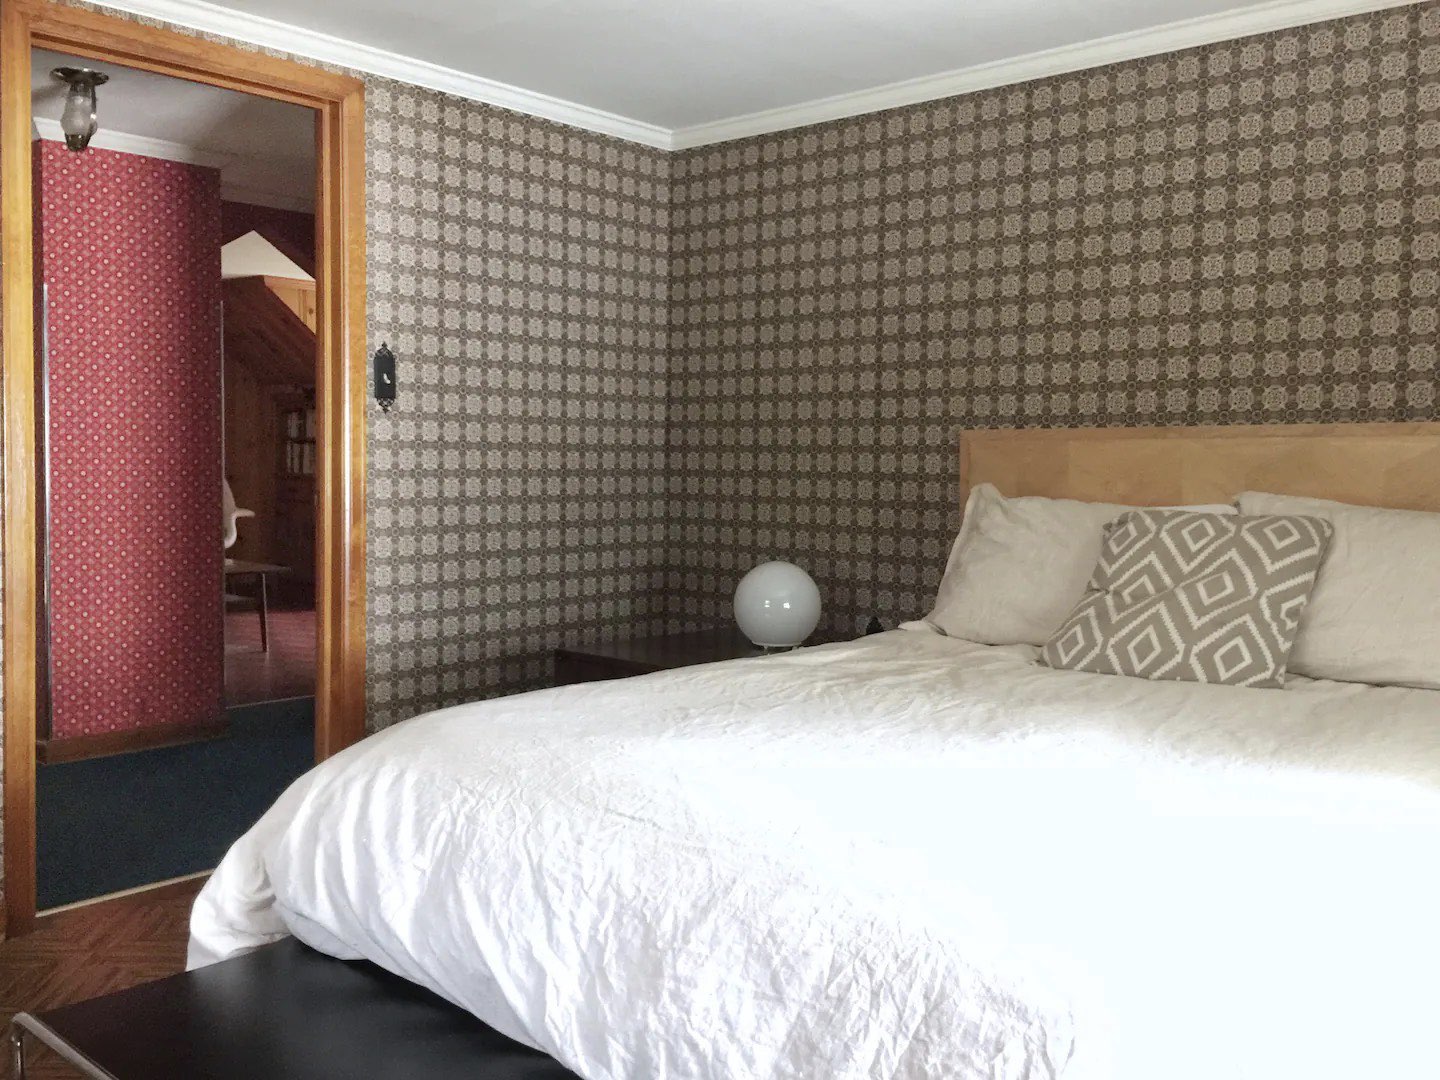 visite deco appartement mid century modern papier peint vintage chambre à coucher sobre inspirations